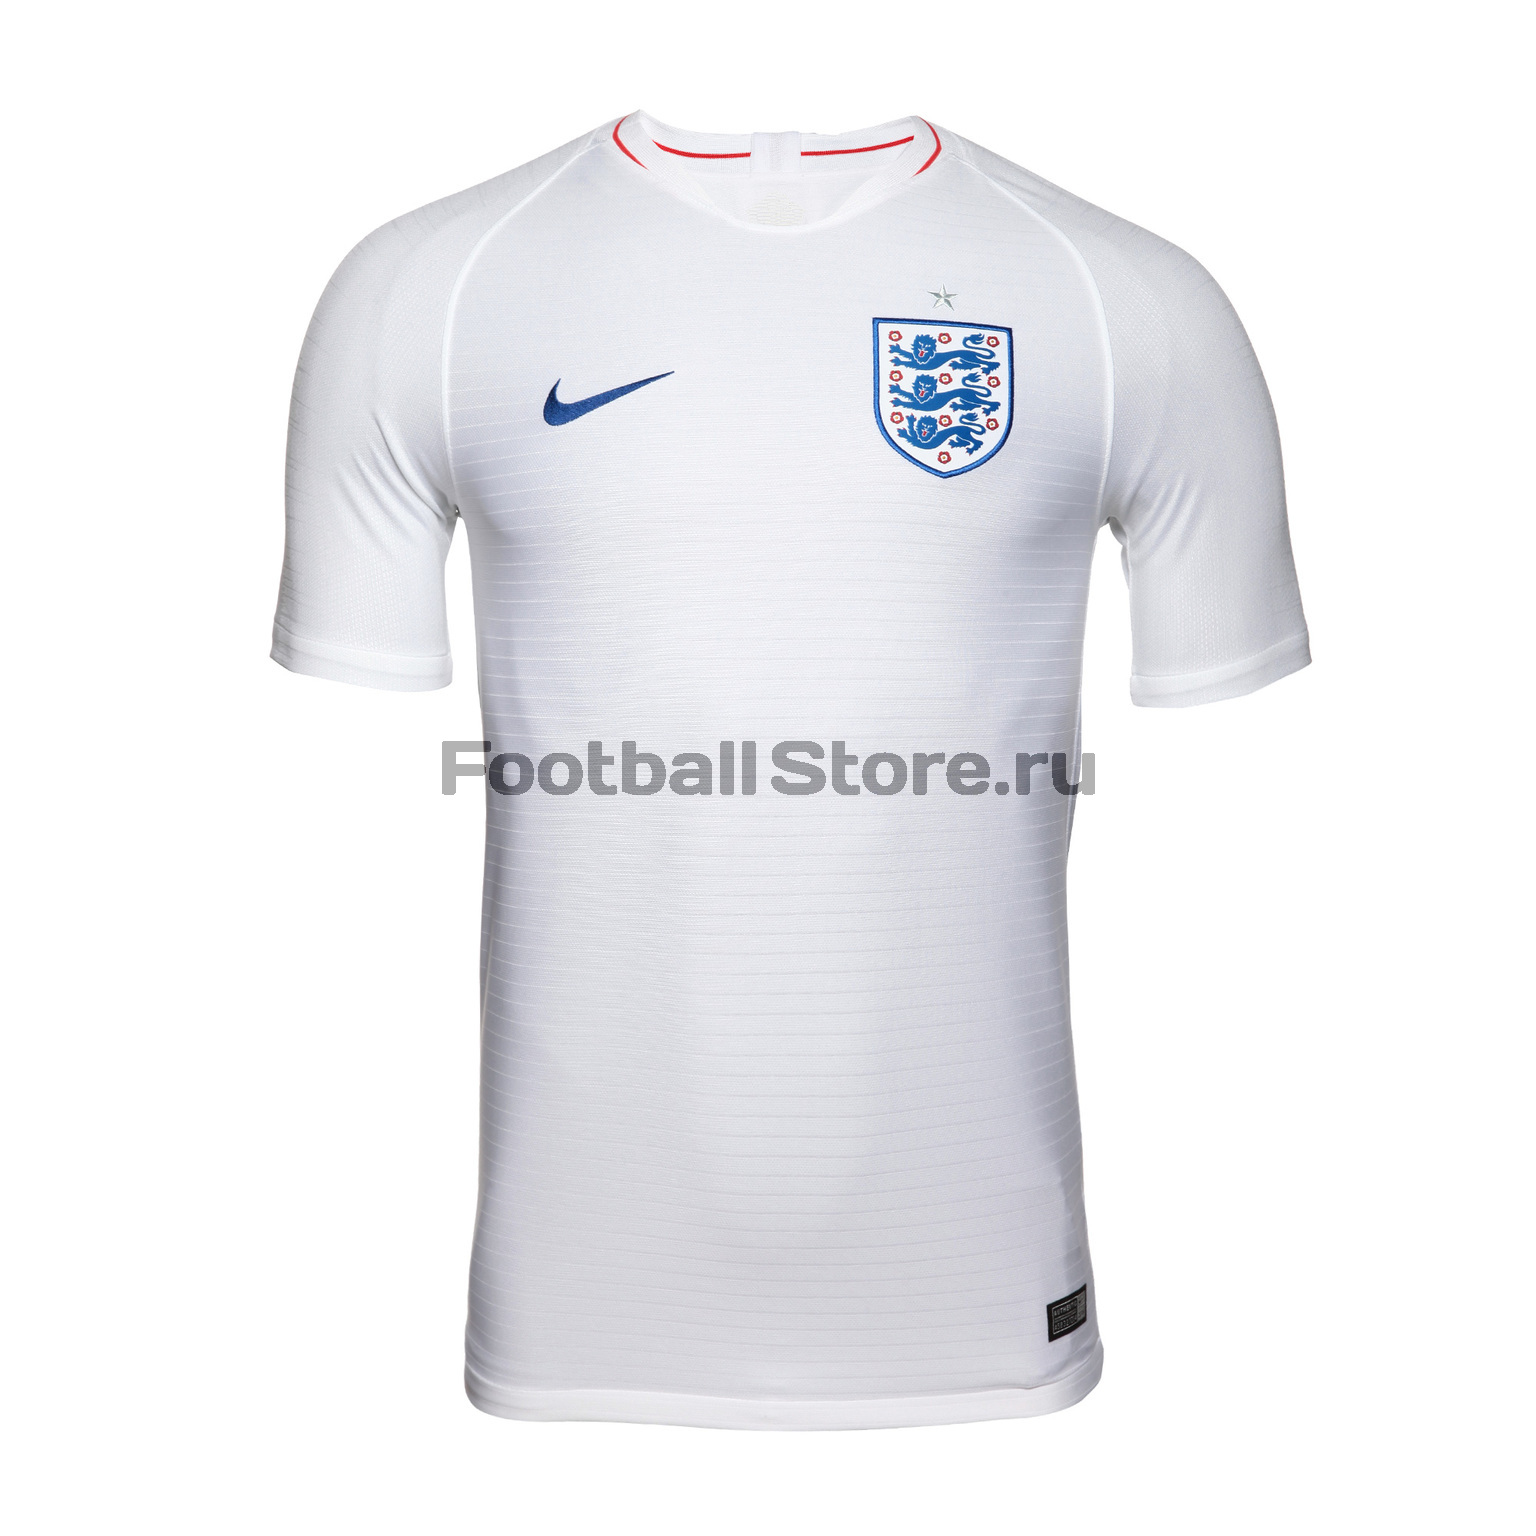 Футболка игровая домашняя Nike сборной Англии 893868-100